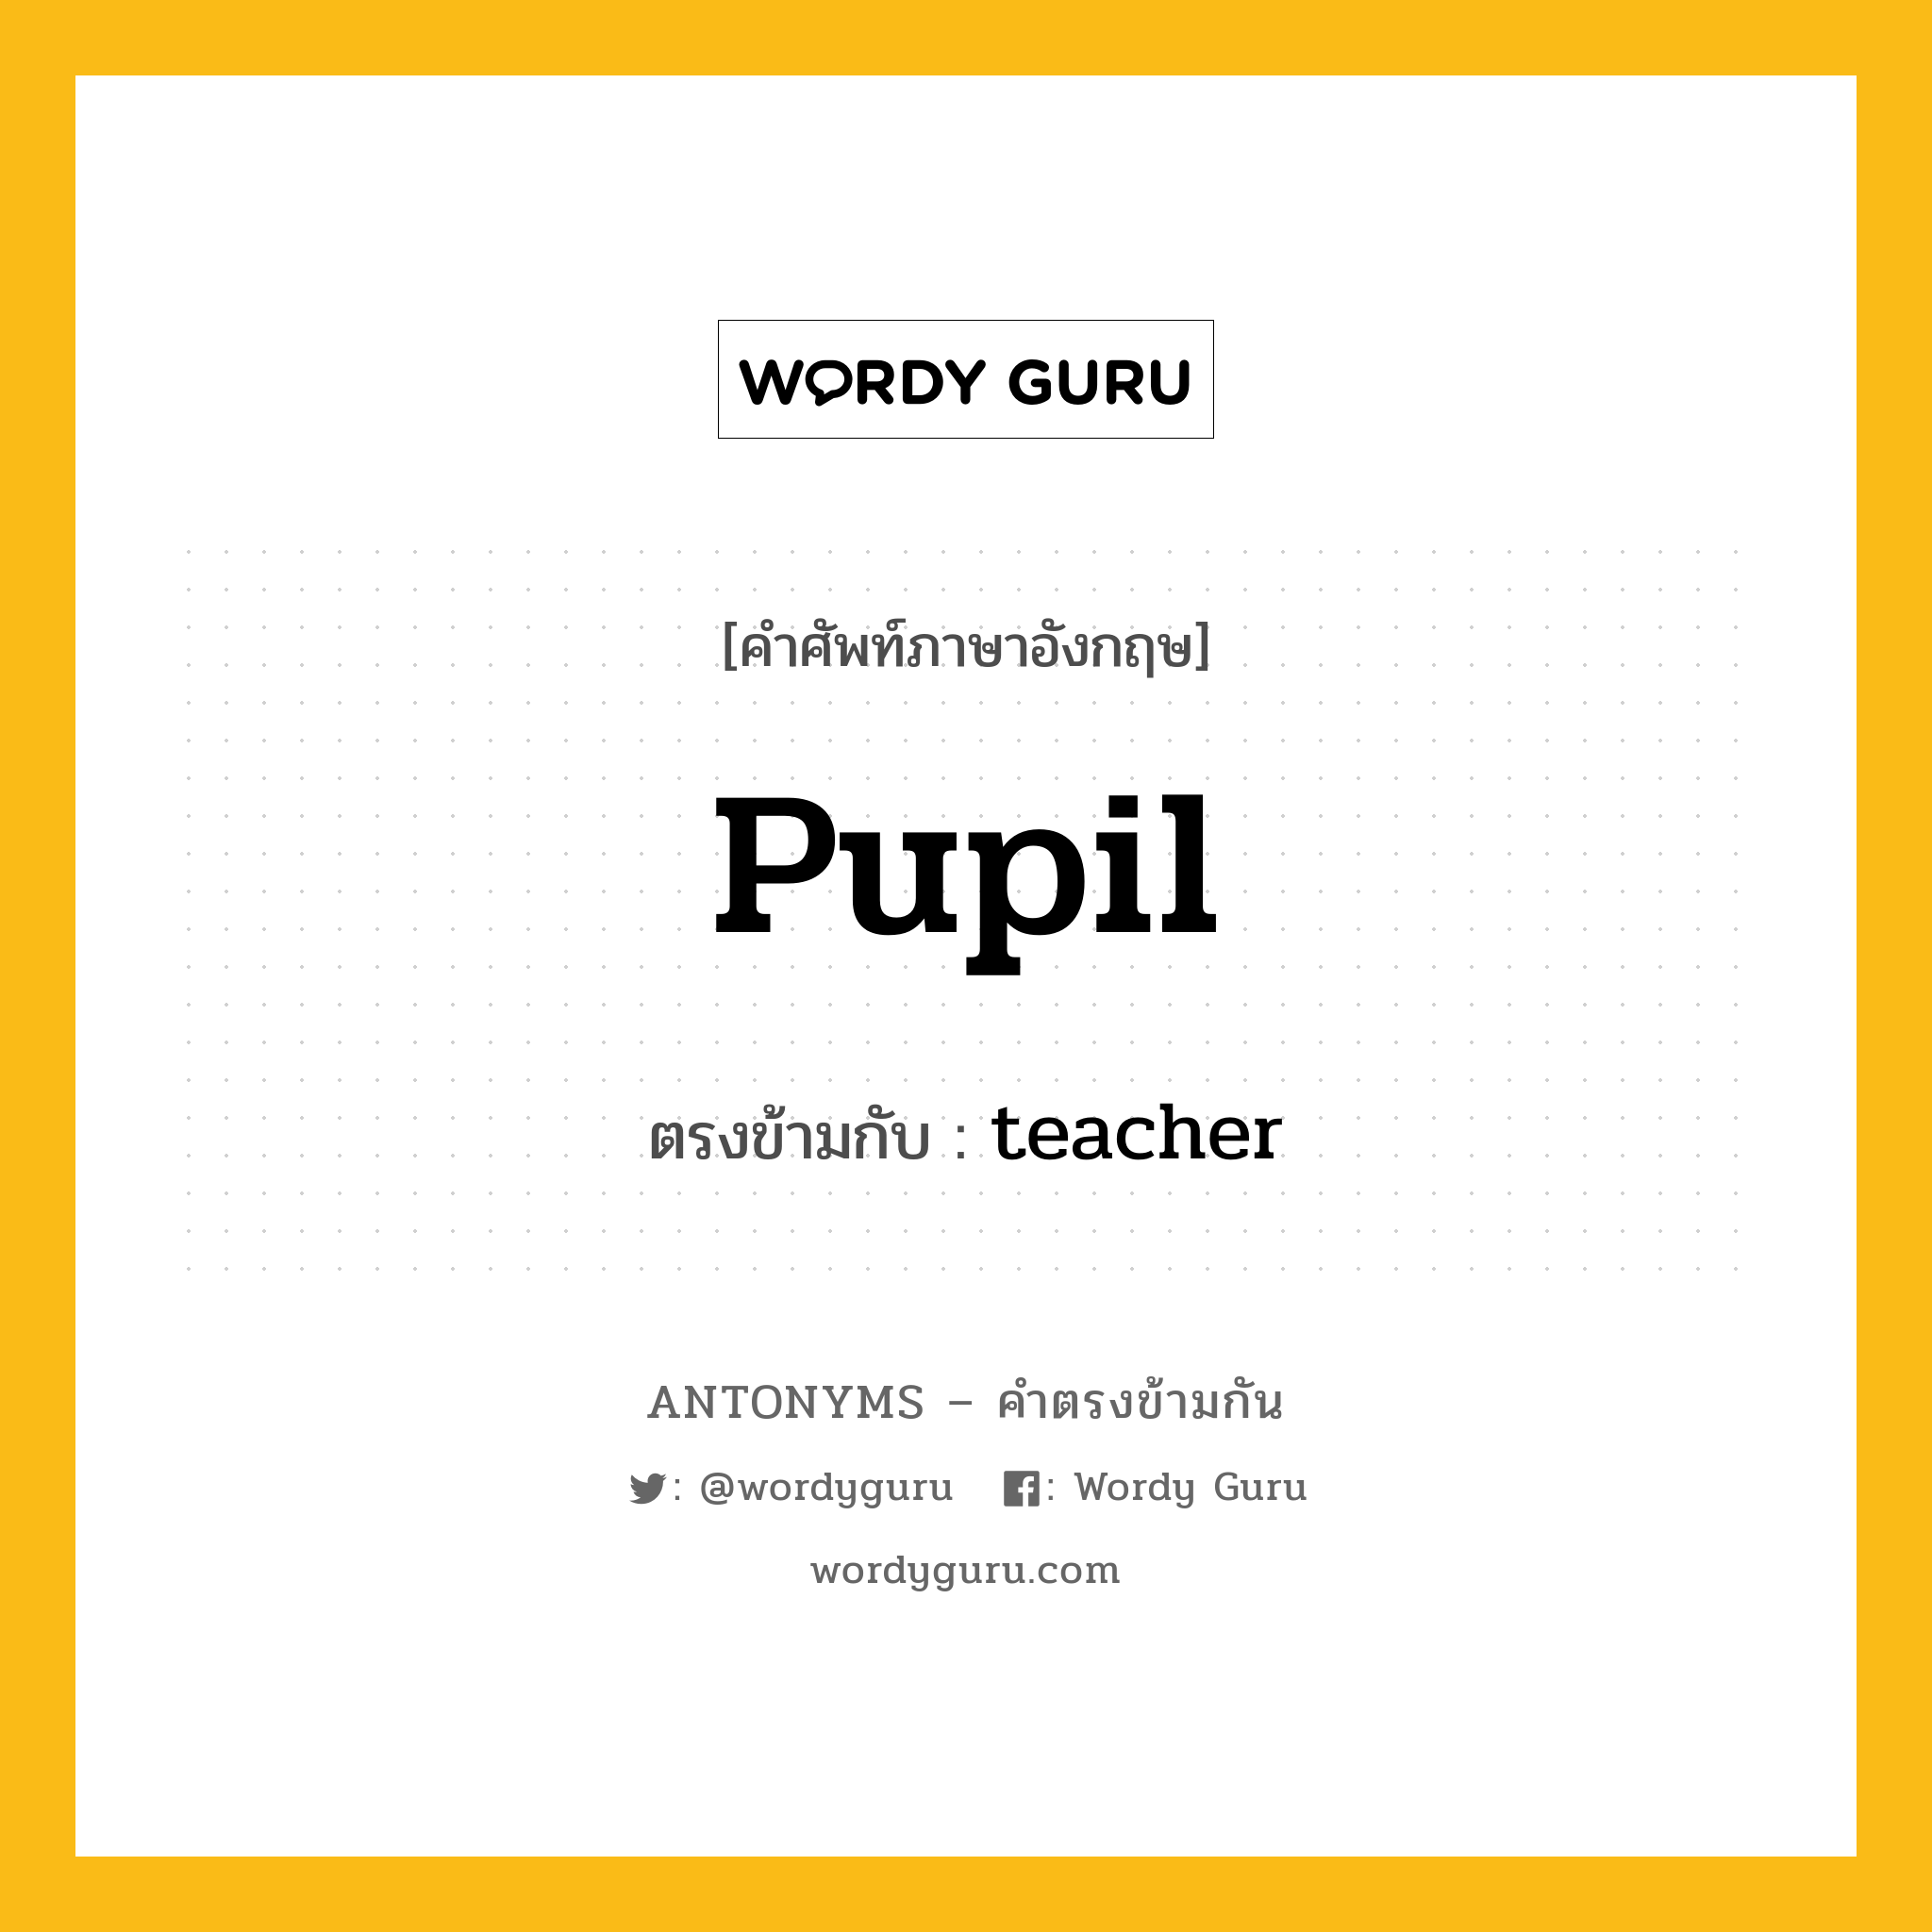 pupil เป็นคำตรงข้ามกับคำไหนบ้าง?, คำศัพท์ภาษาอังกฤษ pupil ตรงข้ามกับ teacher หมวด teacher